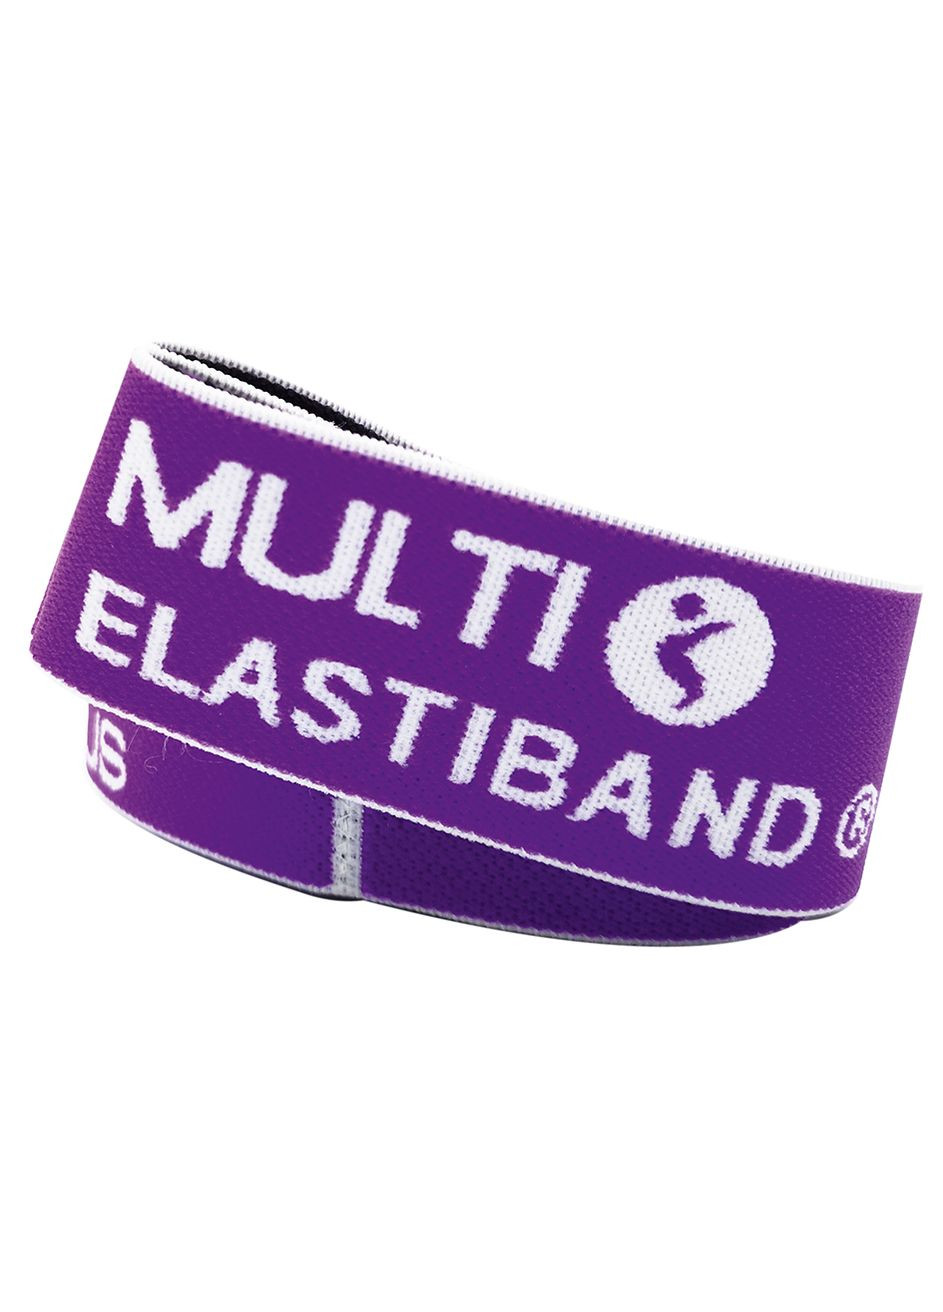 Эспандер для фитнеса фиолетовый, 15кг + QR код (SLTS-0033) Sveltus multi elastiband (293851335)